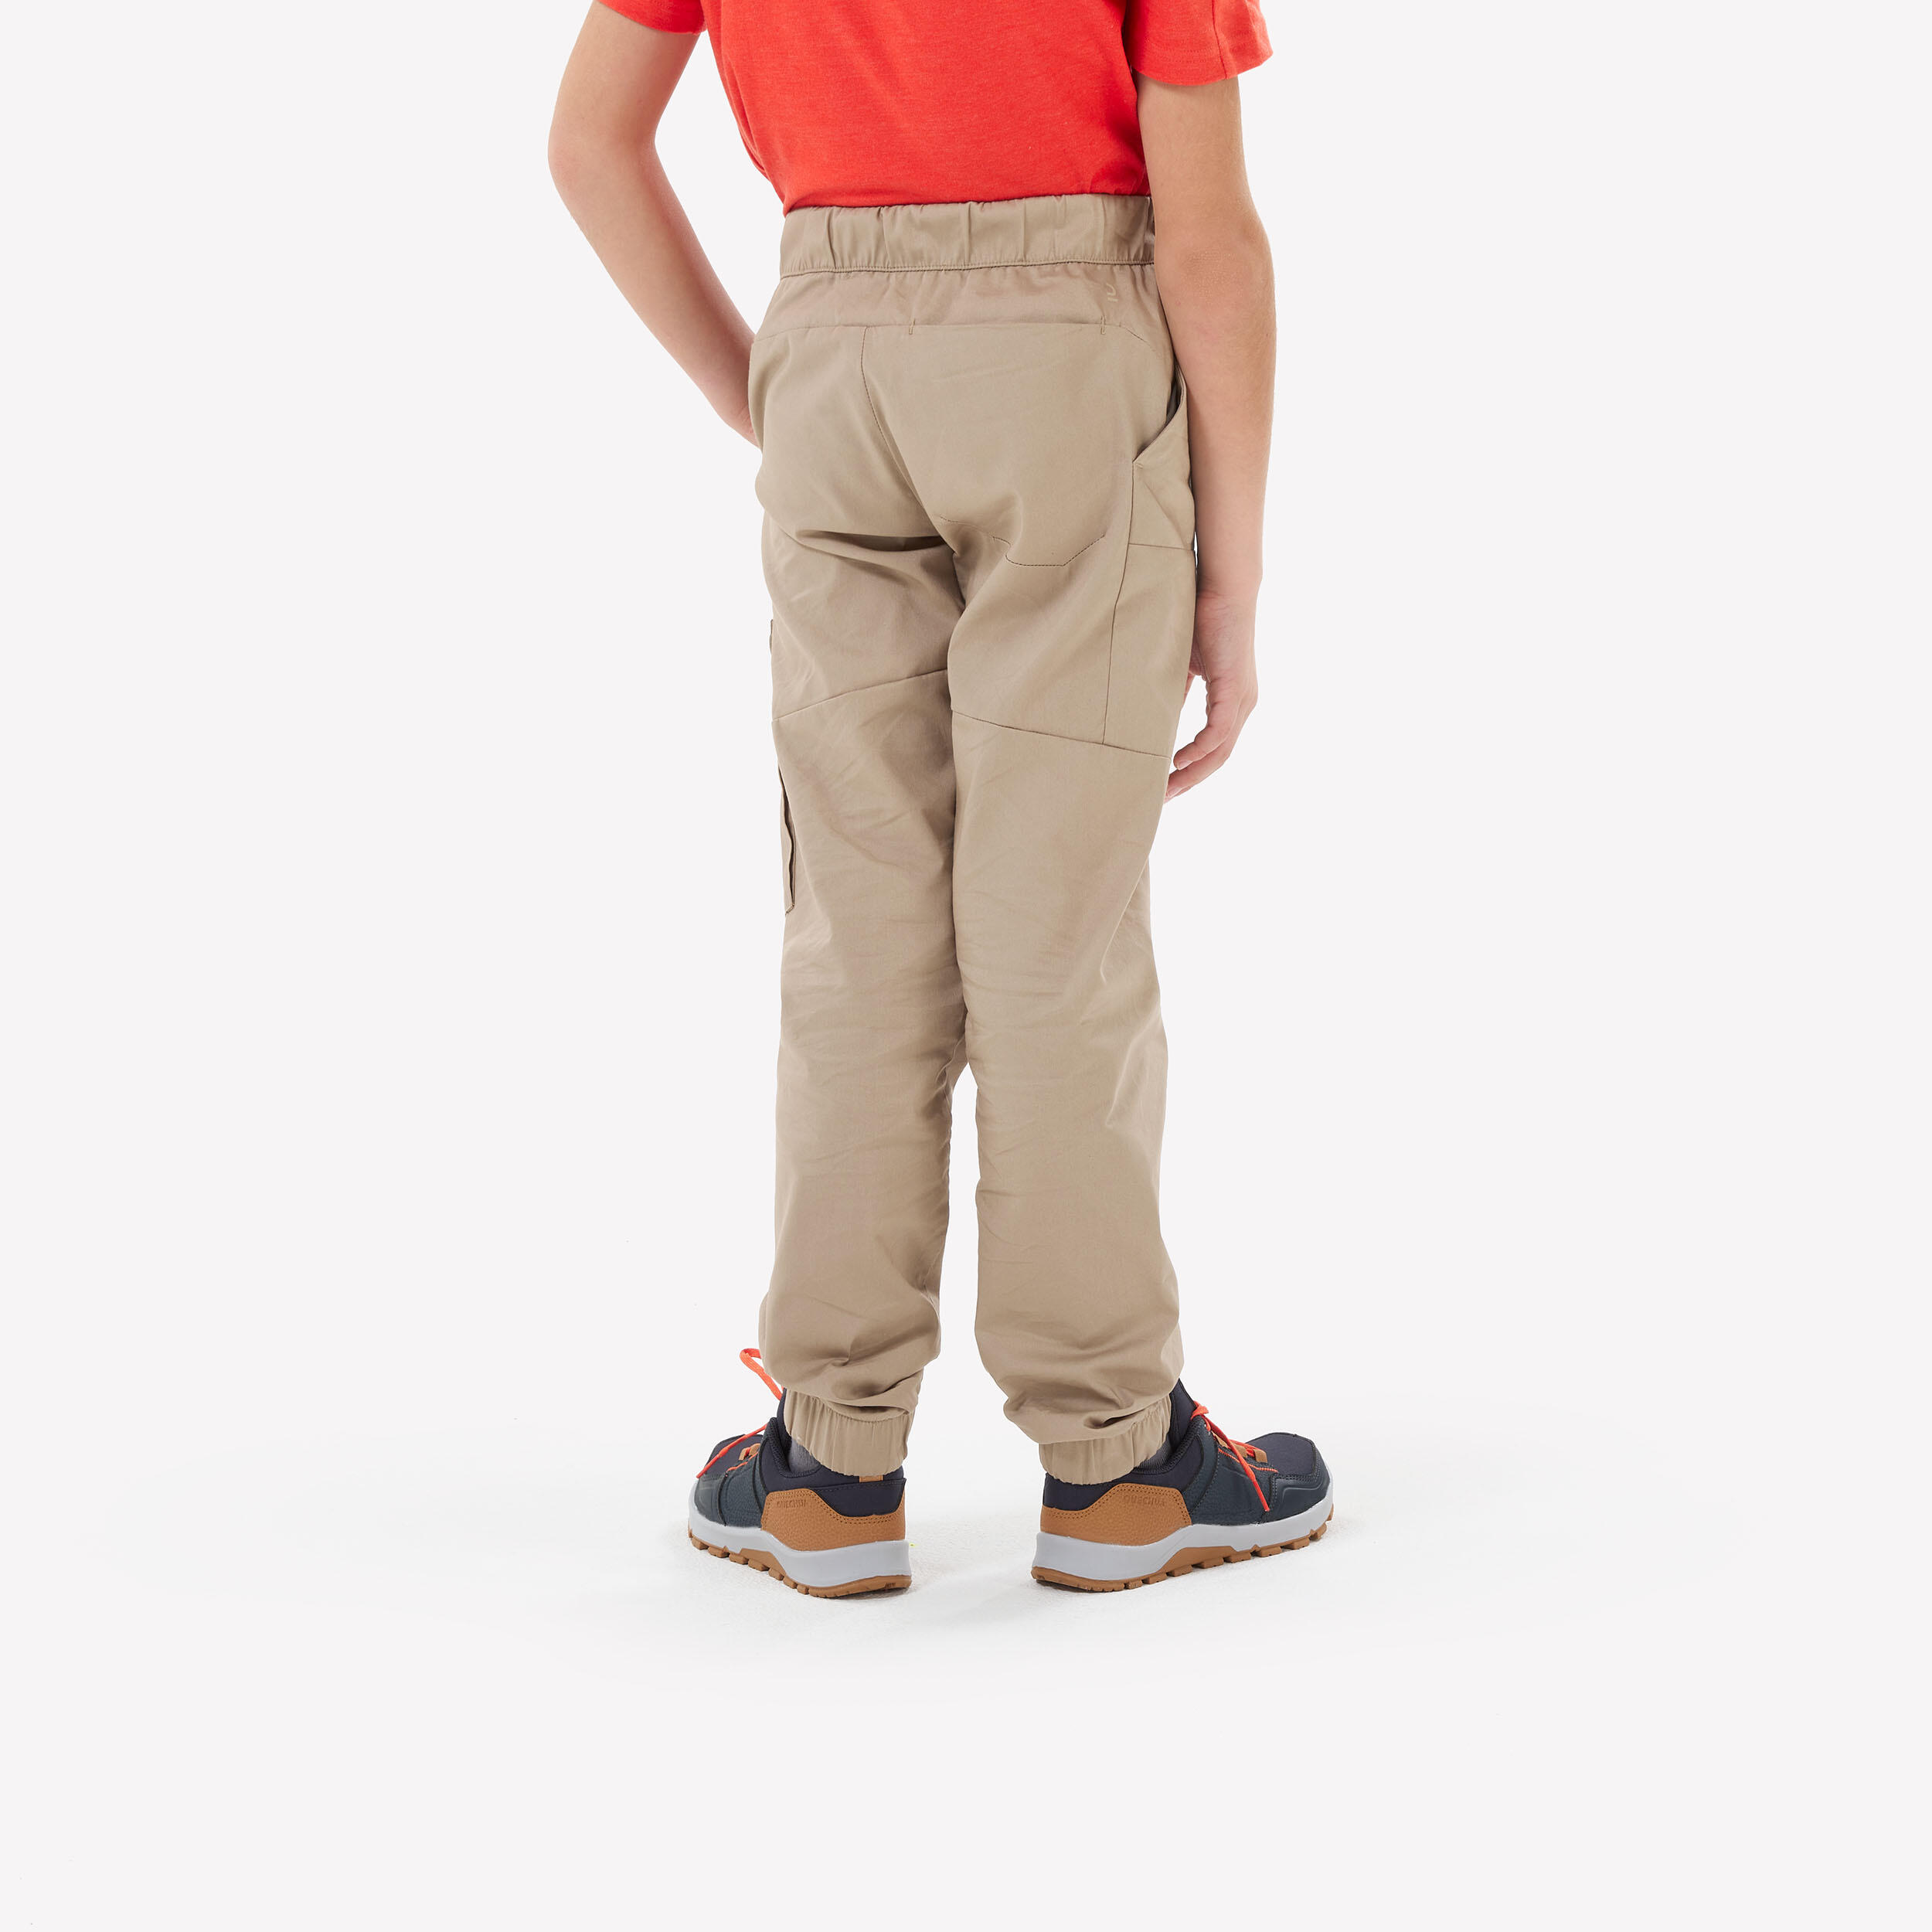 Kids’ Hiking Trousers NH100 Beige - Age 7-15 years 3/9